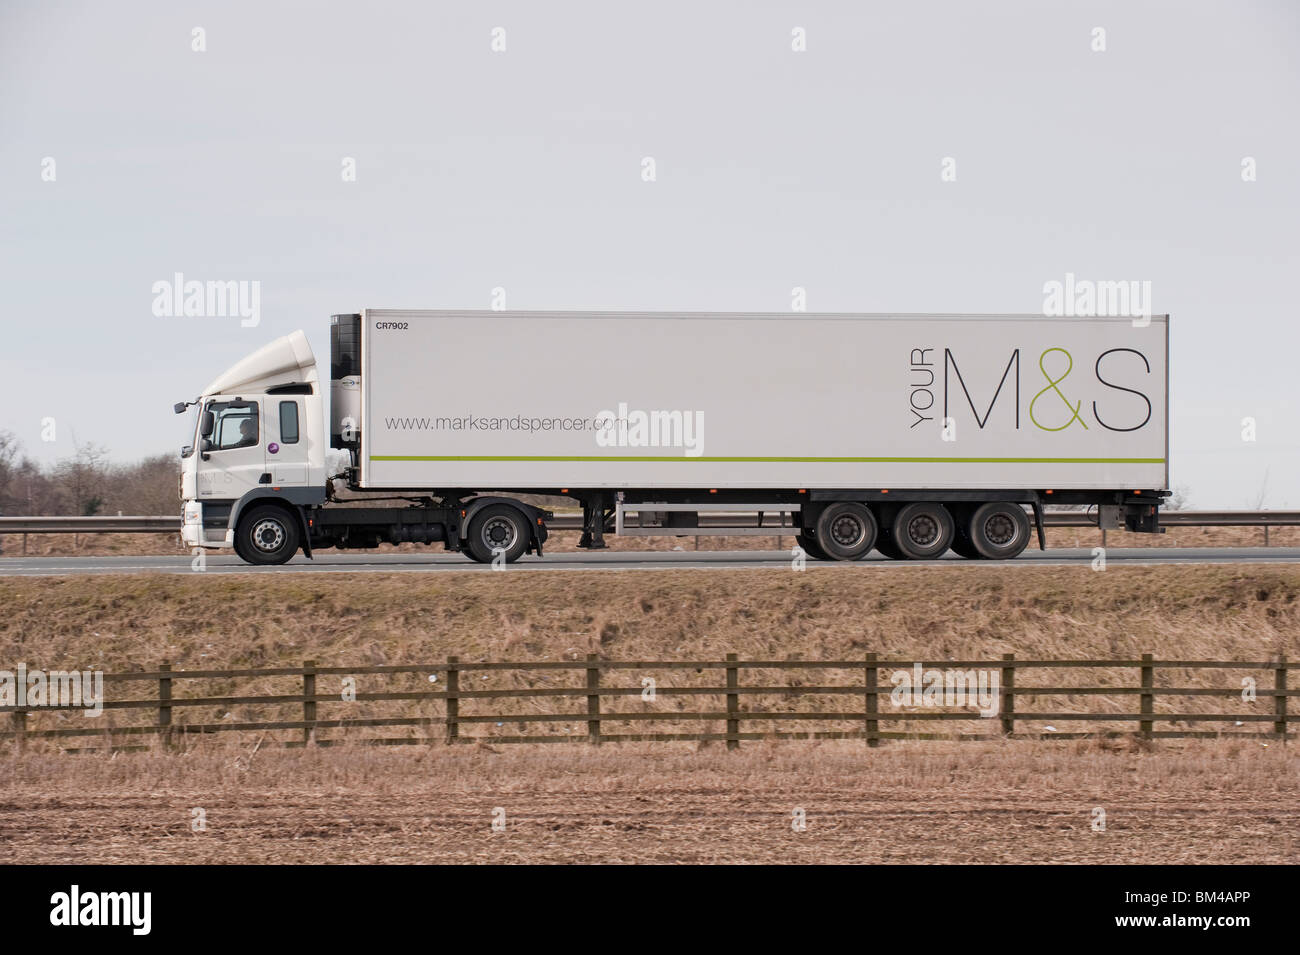 Un camion transportant des marchandises pour Marks & Spencer, qui se déplacent le long d'une autoroute. Banque D'Images